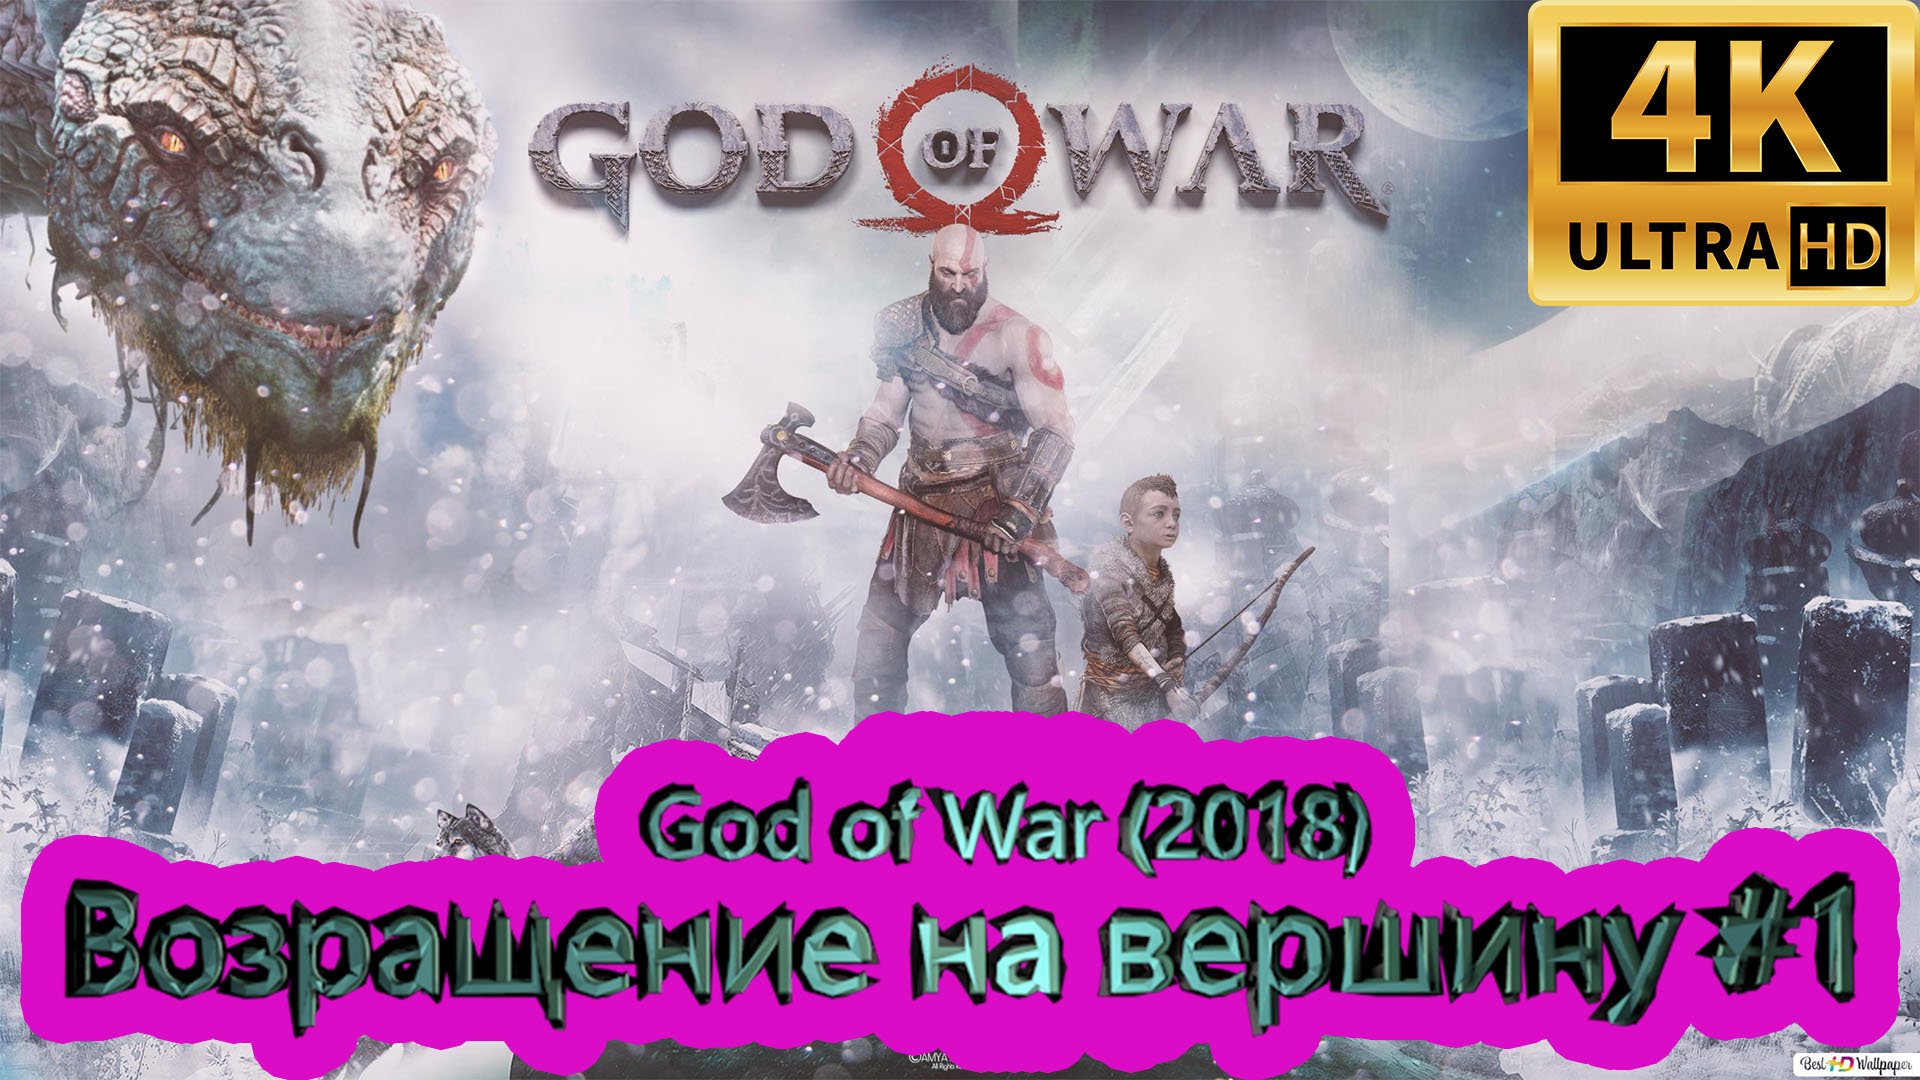 God of War прохождение (2018) [4K]  ► Возращение на вершину #1 ► ГОД ОФ ВАР ► #43 /RTX 3080 Ti